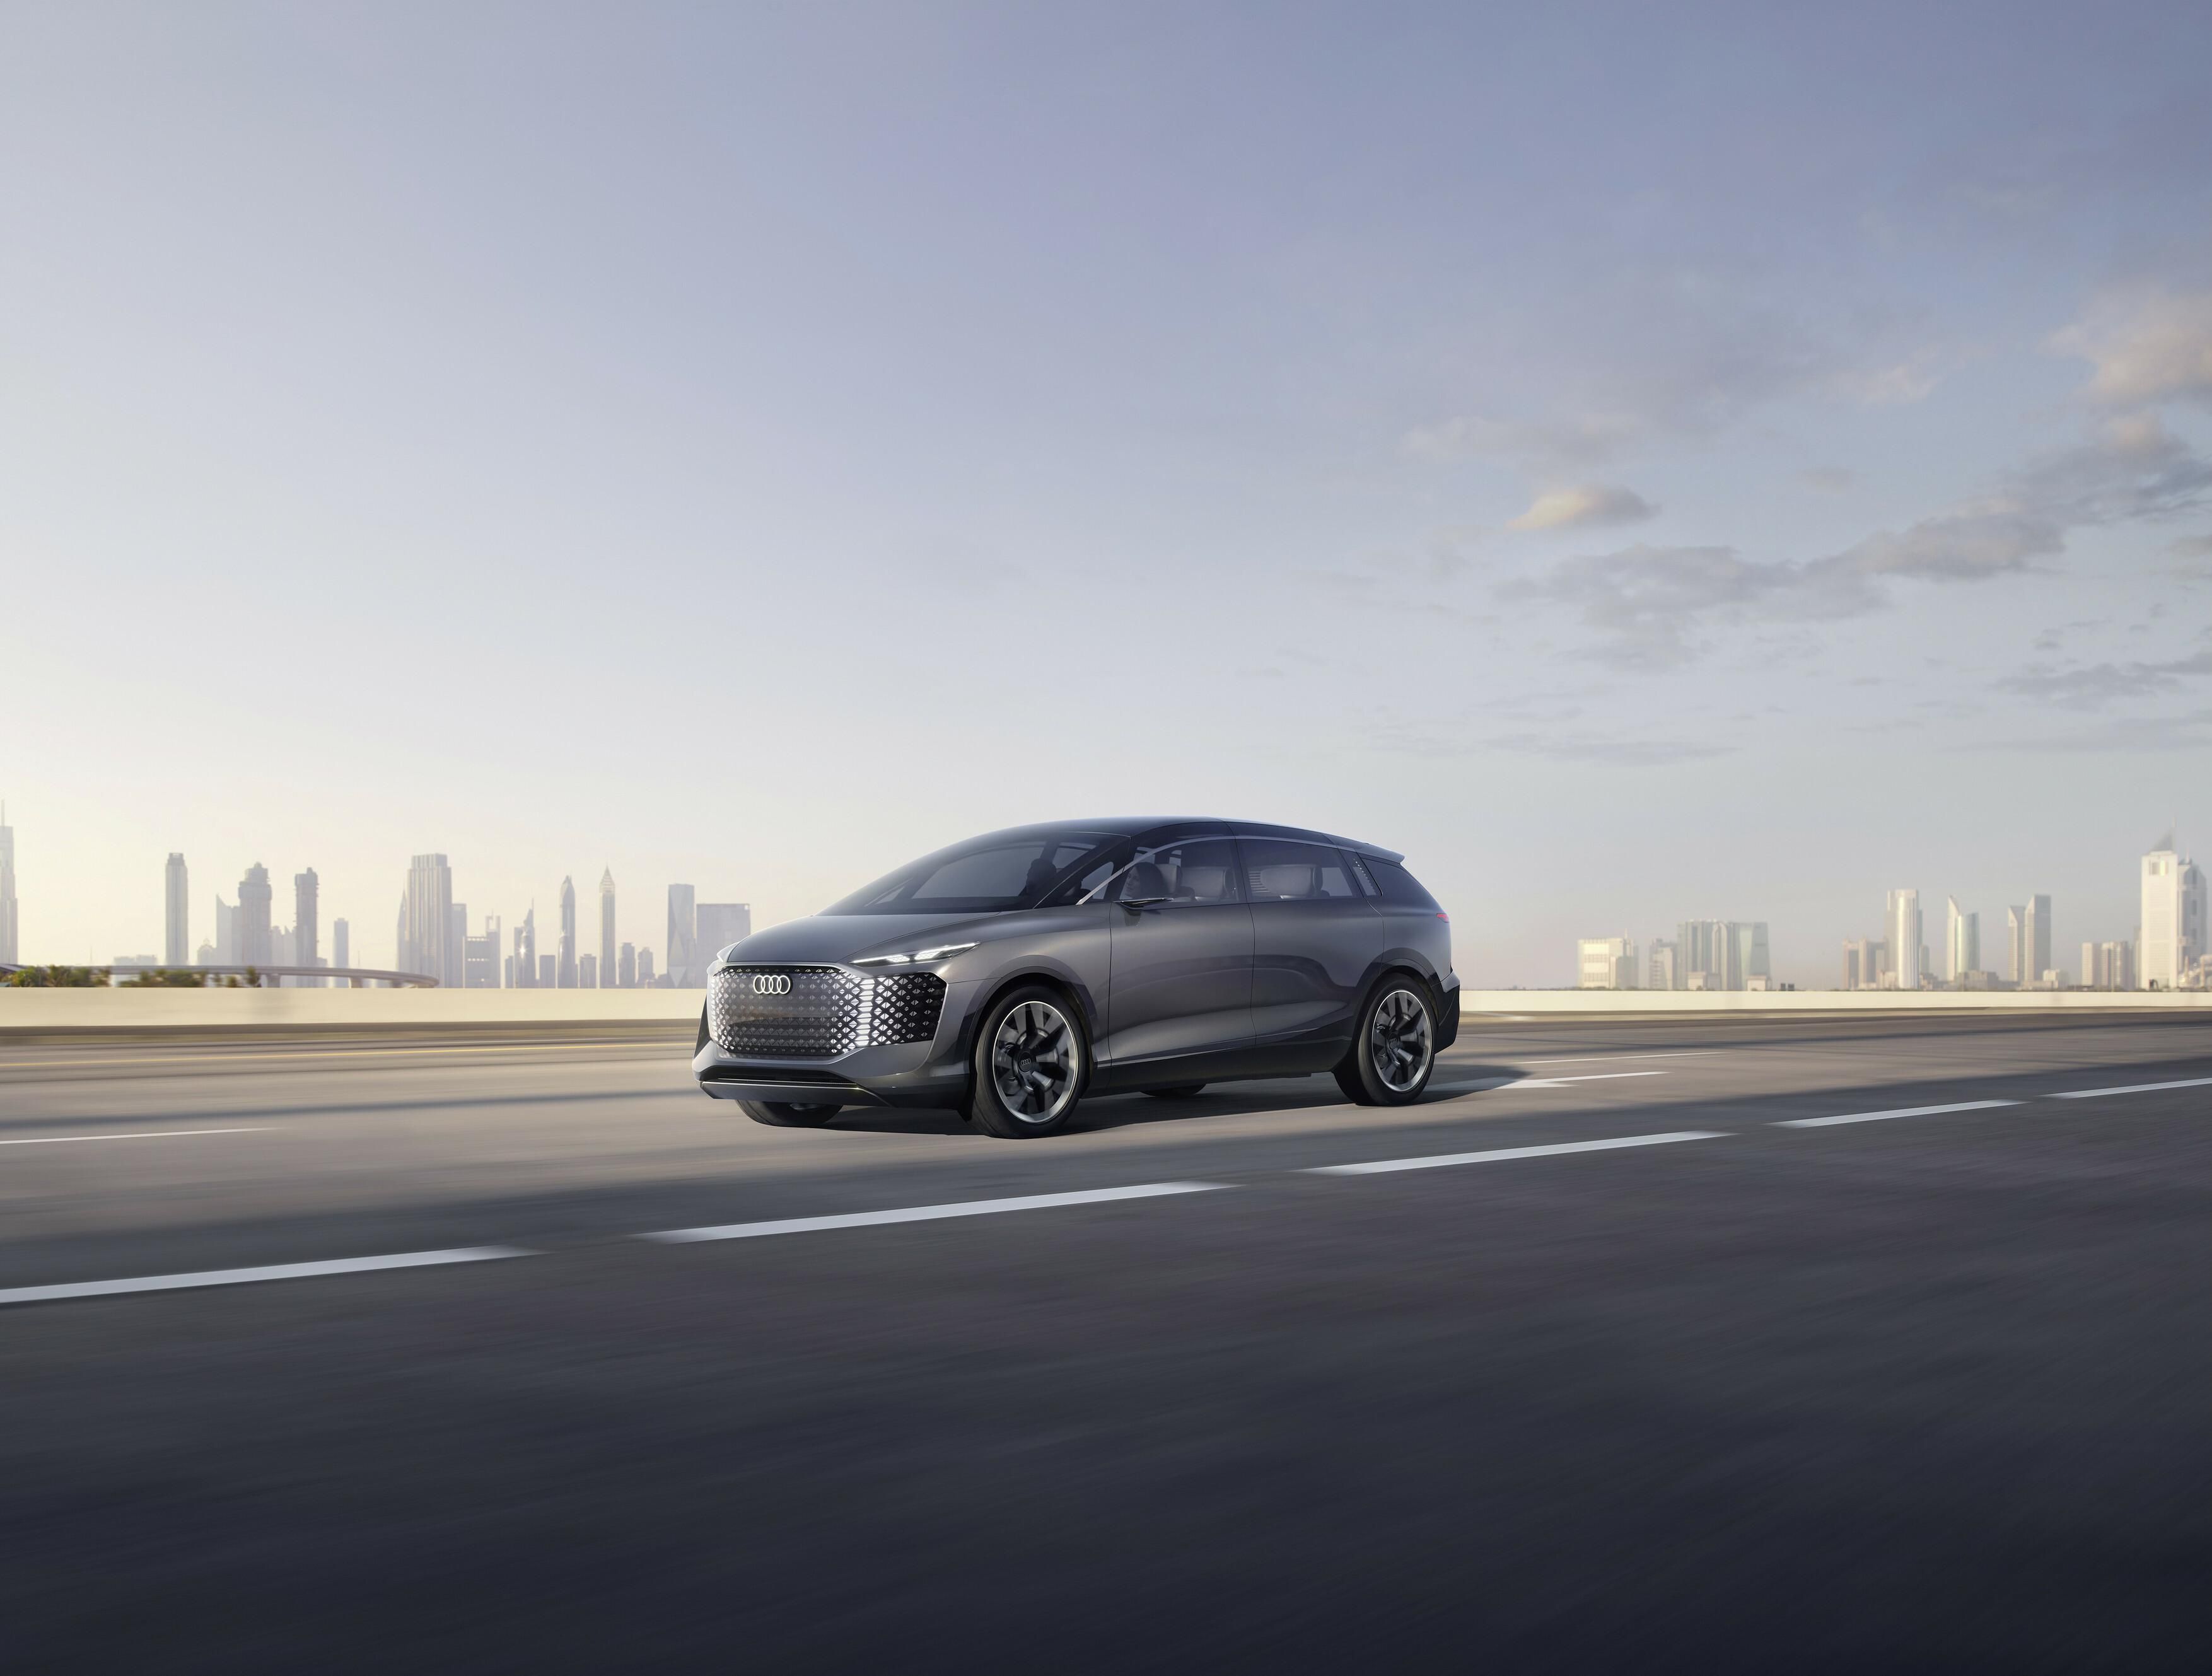 Új Audi Urbansphere elektromos autó háttérben egy nagyvárossal